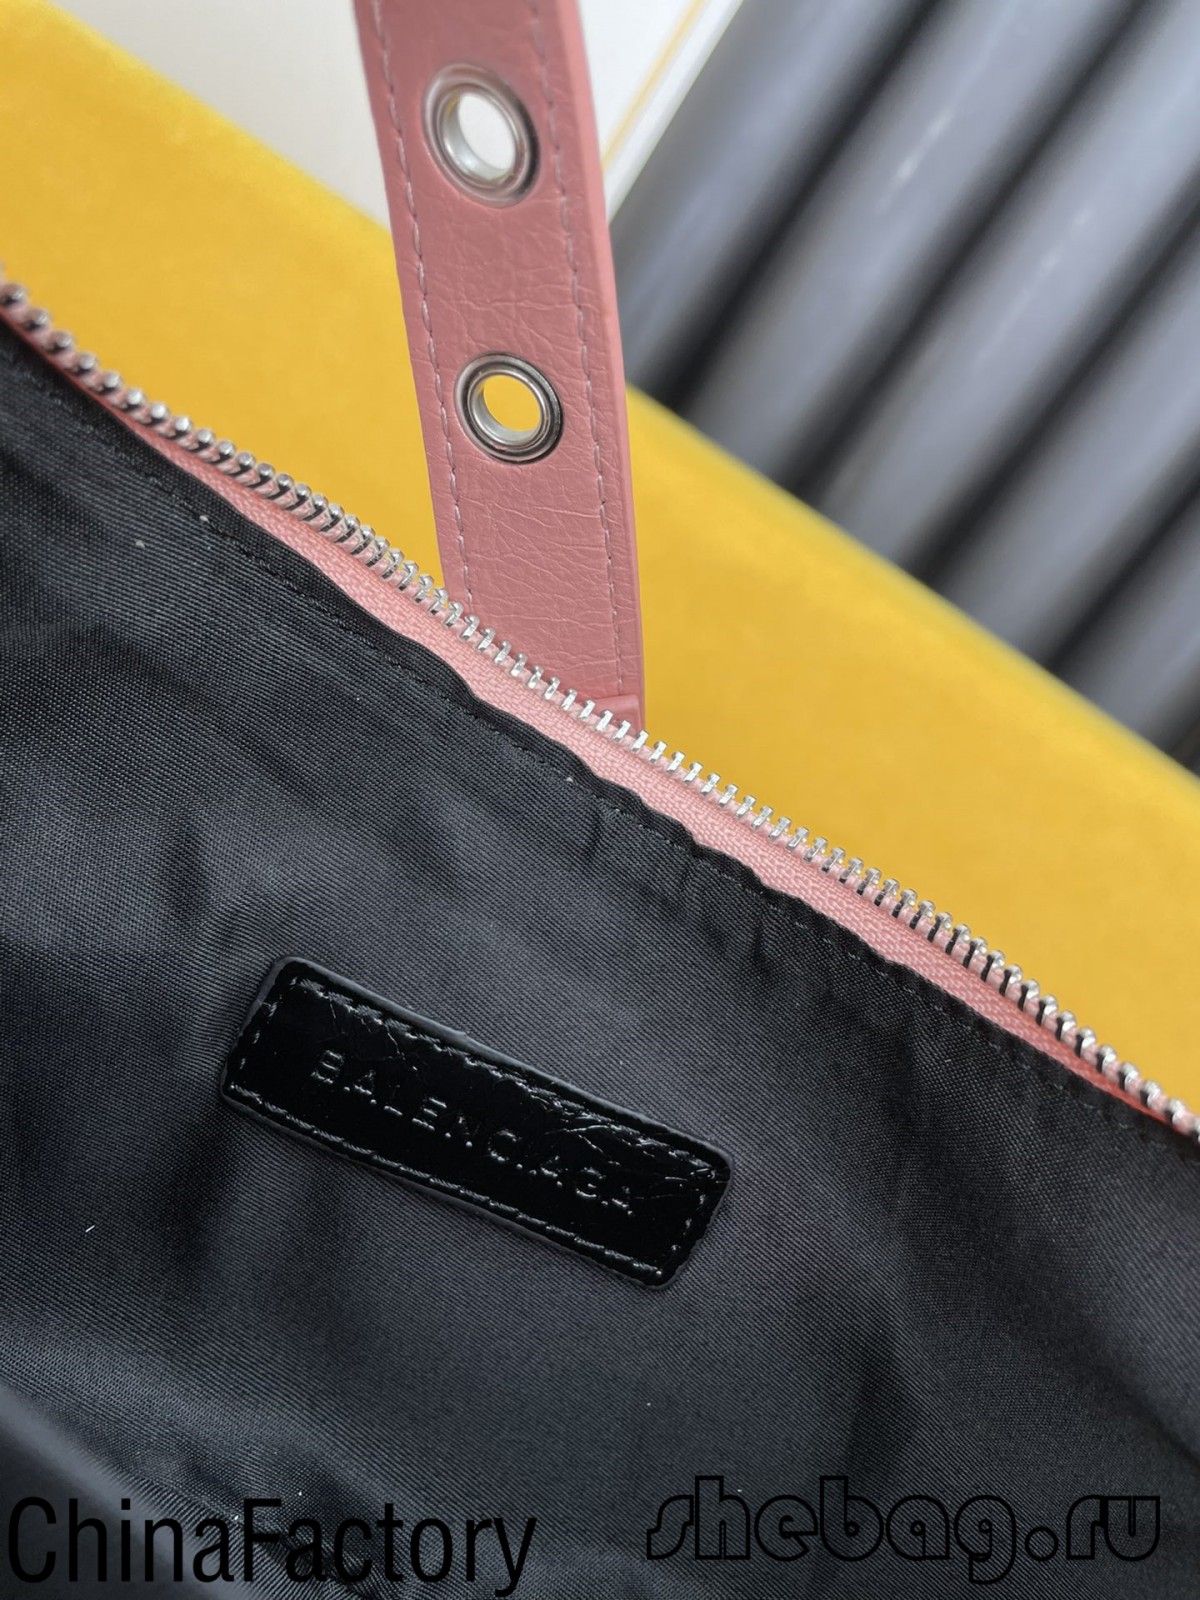 Balenciaga Umhängetasche Replik: Le Cagole (Nov 2021)-Beste Qualität gefälschte Louis Vuitton-Taschen Online-Shop, Replik-Designer-Tasche ru